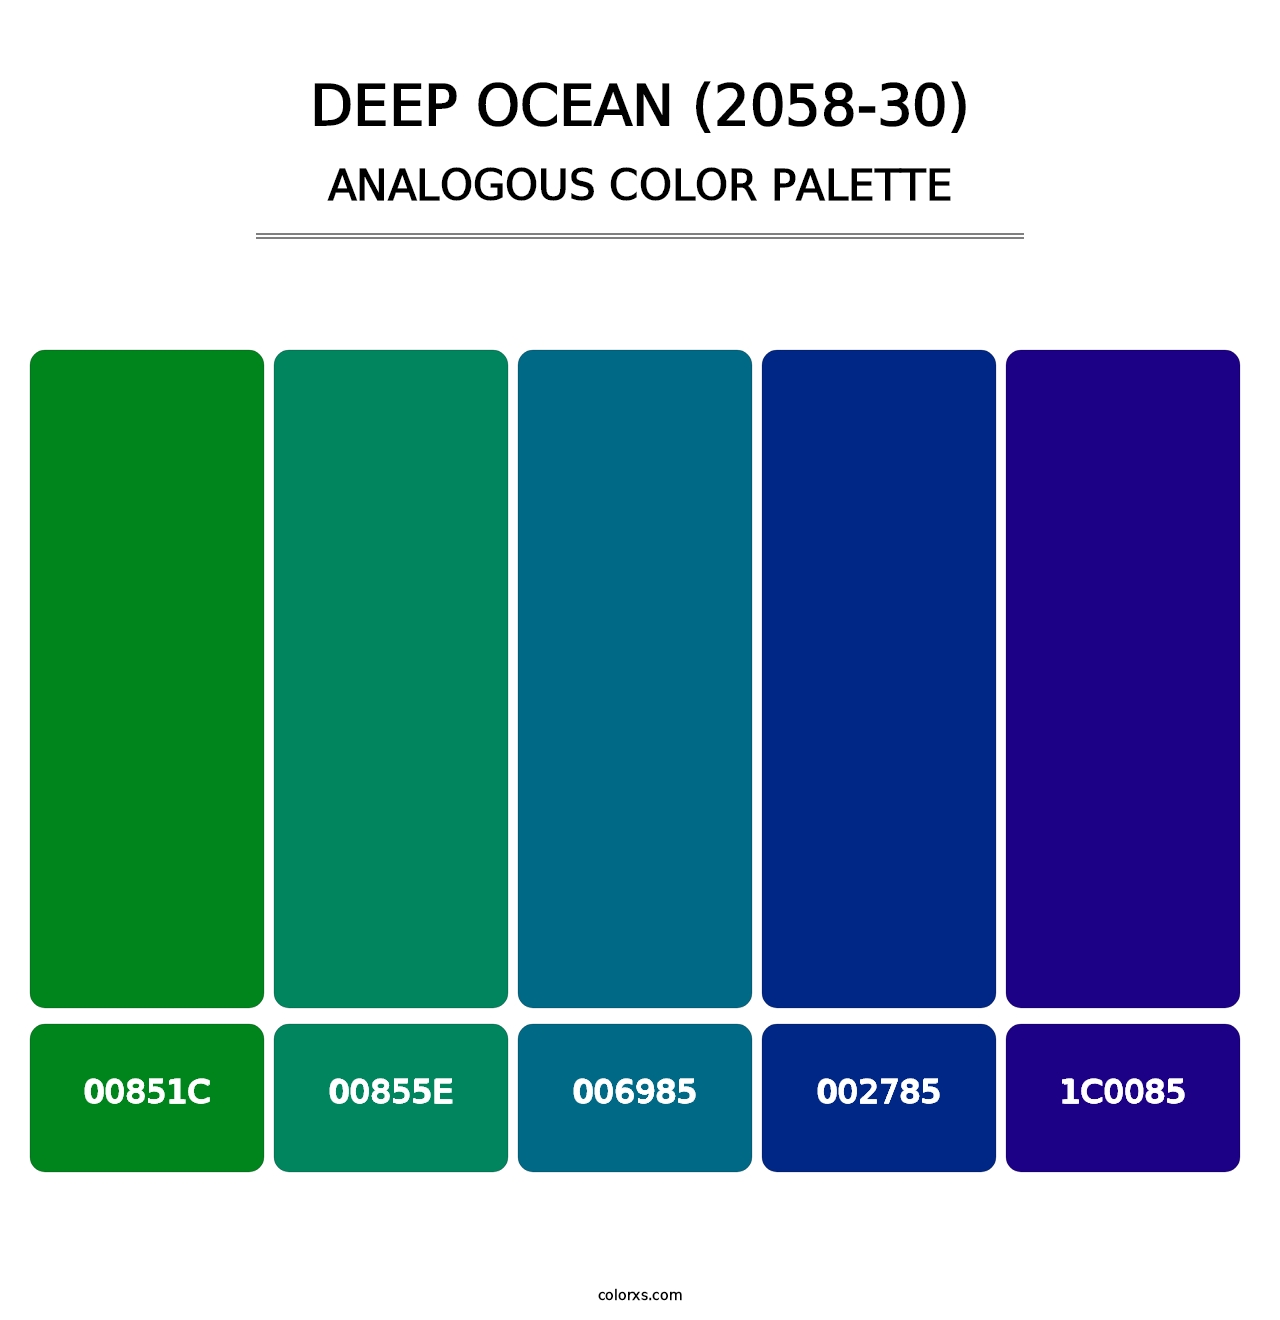 Deep Ocean (2058-30) - Analogous Color Palette